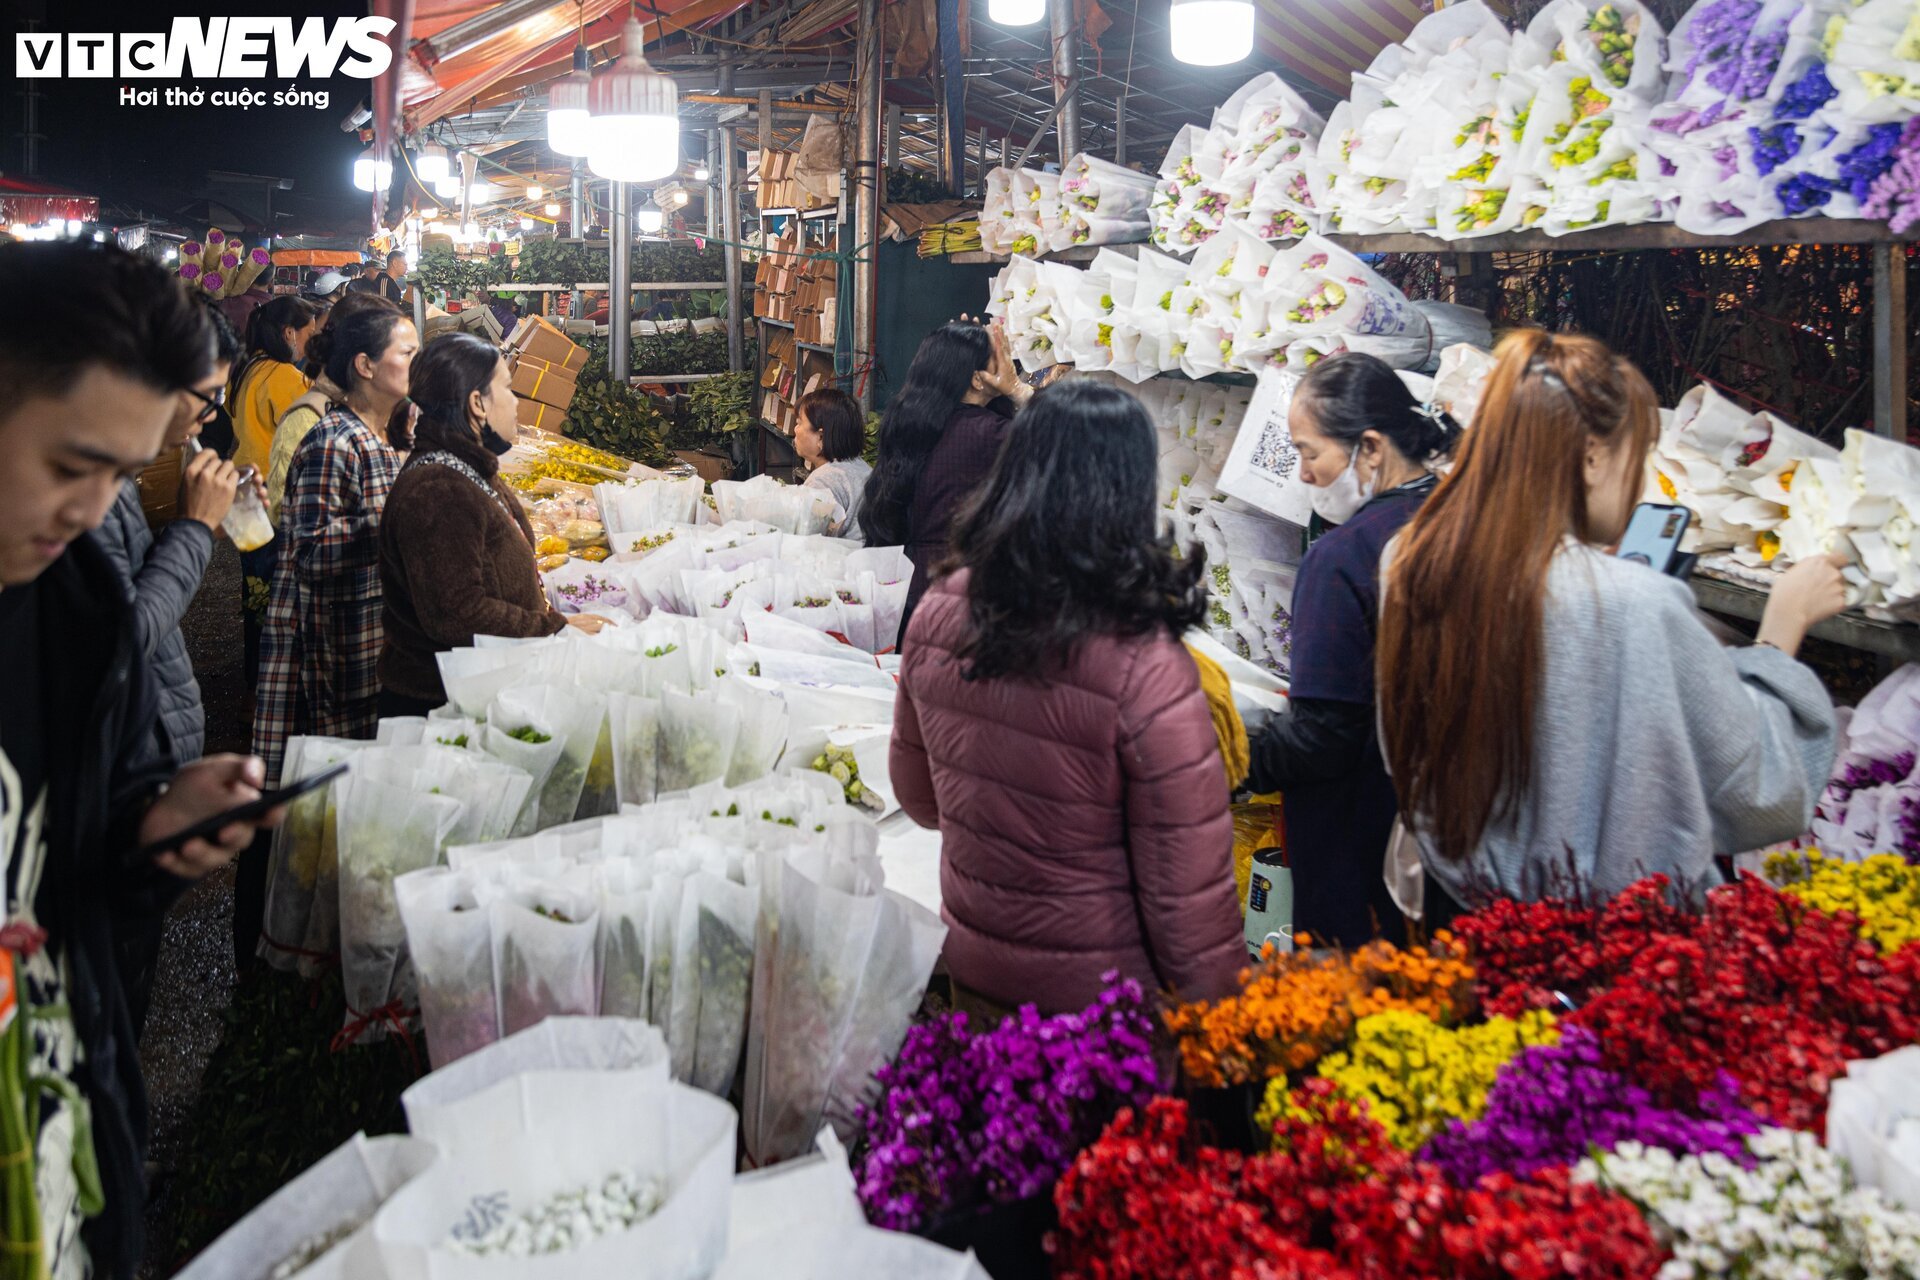 Chợ hoa tươi lớn nhất Hà Nội nhộn nhịp suốt đêm trước ngày 8/3 - Ảnh 18.